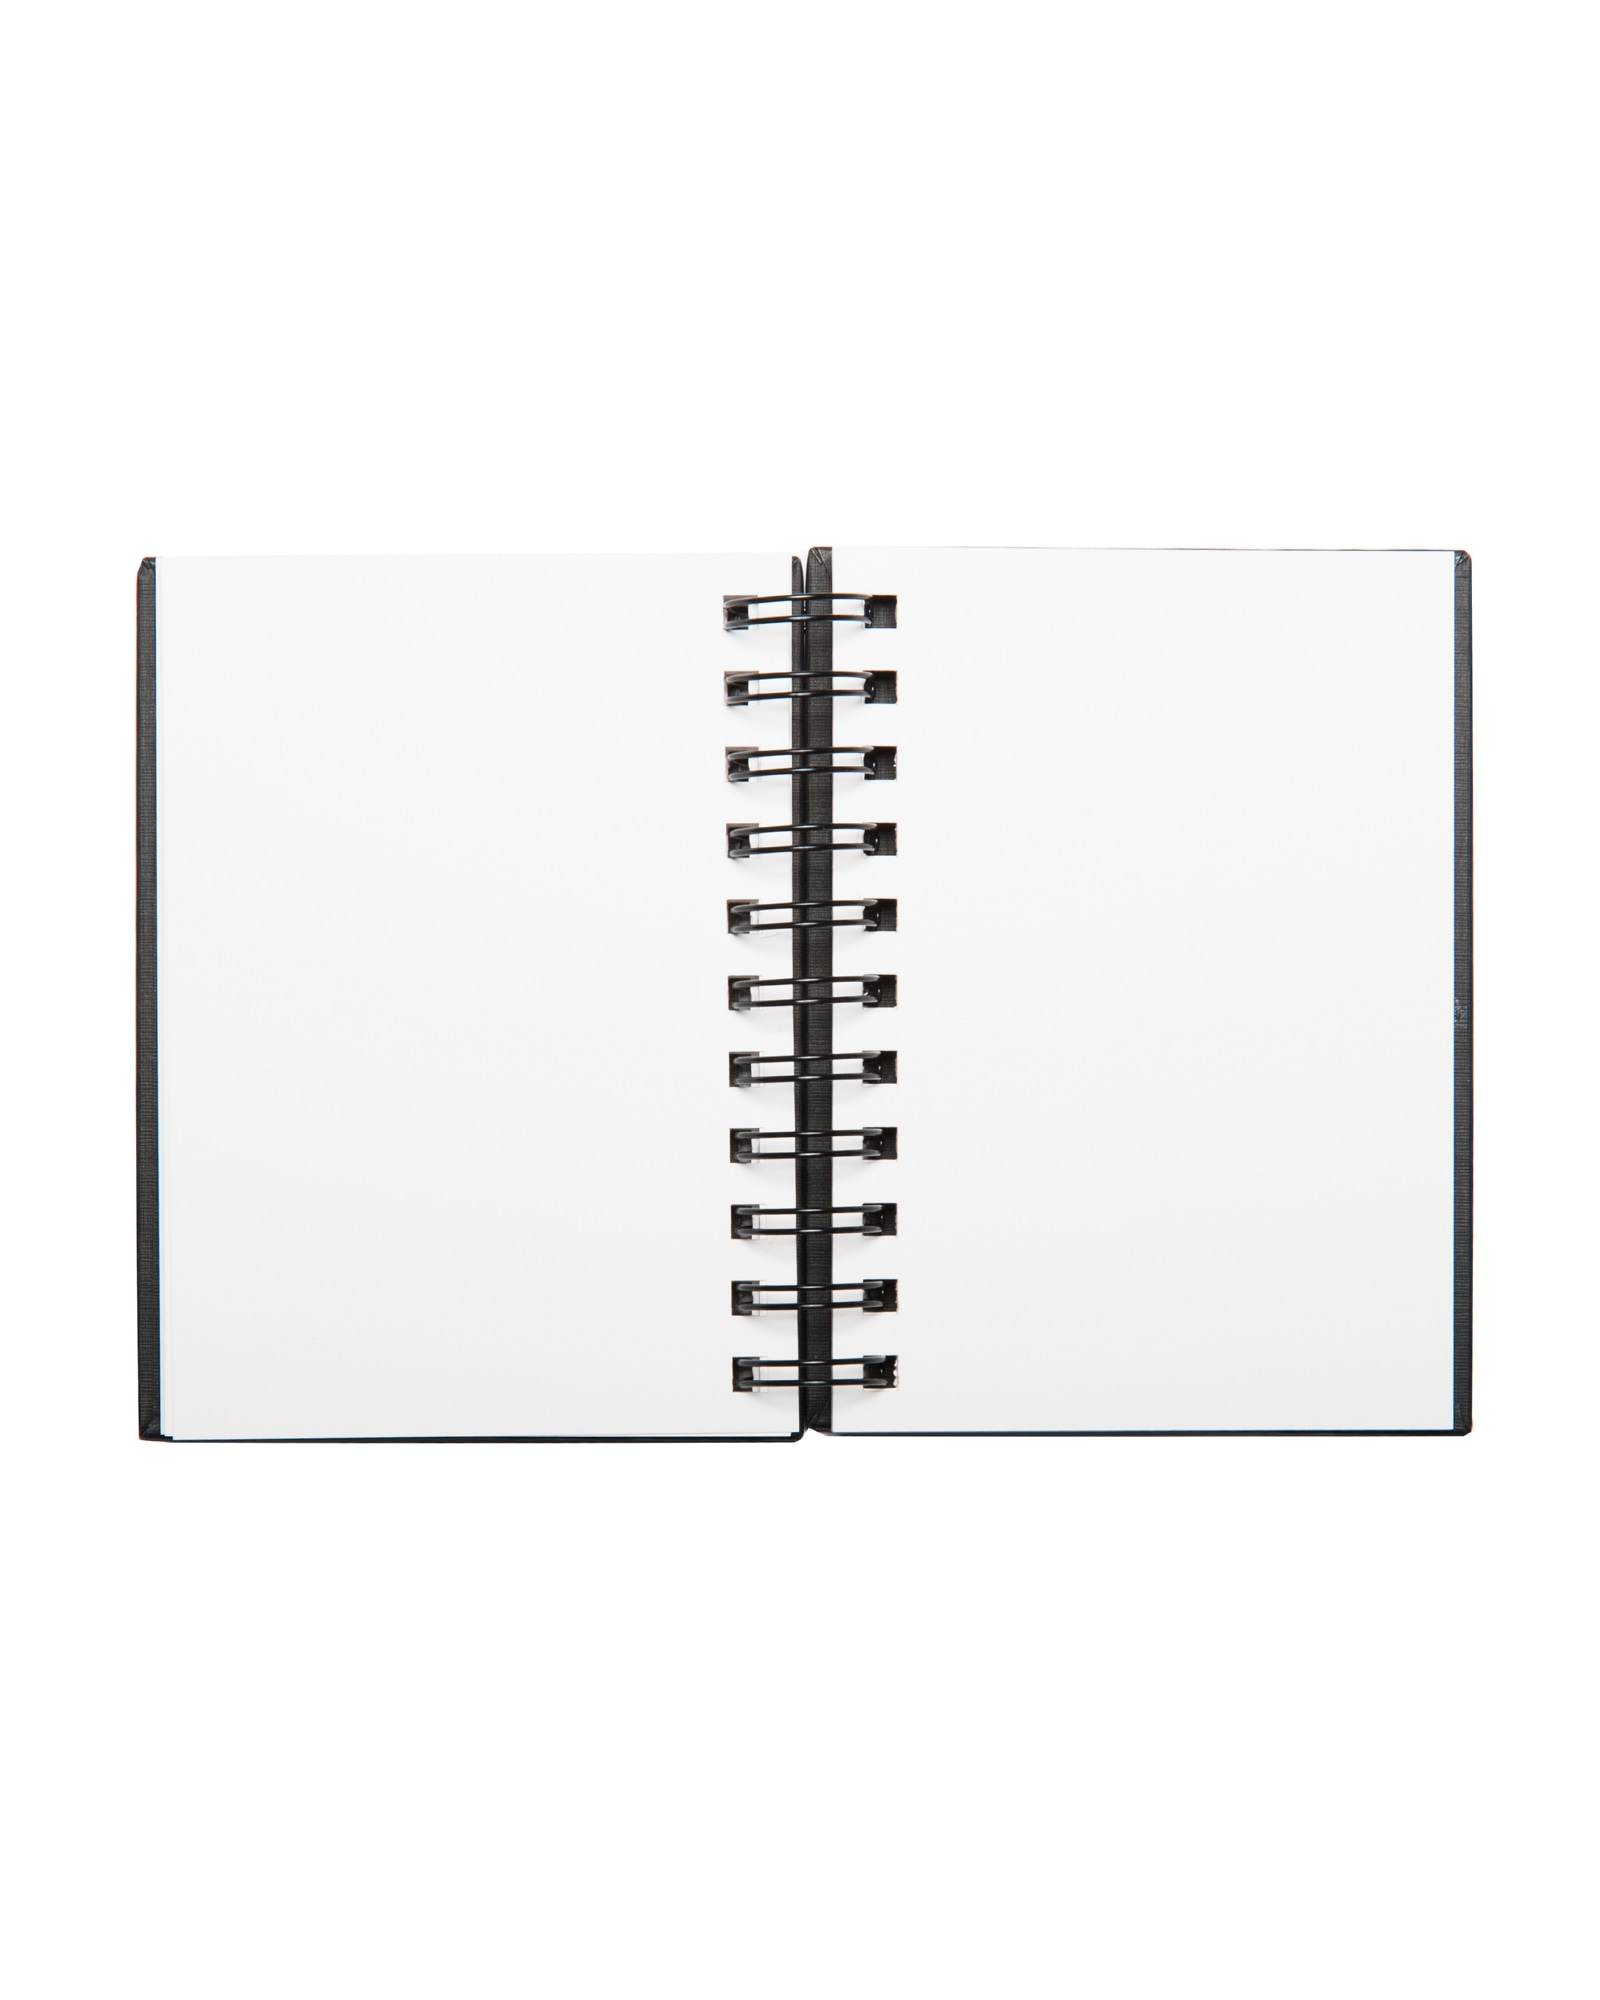 Блокнот для зарисовок Sketchbook 110г/м.кв мелкозернистая 80л 12 размеров в ассортименте